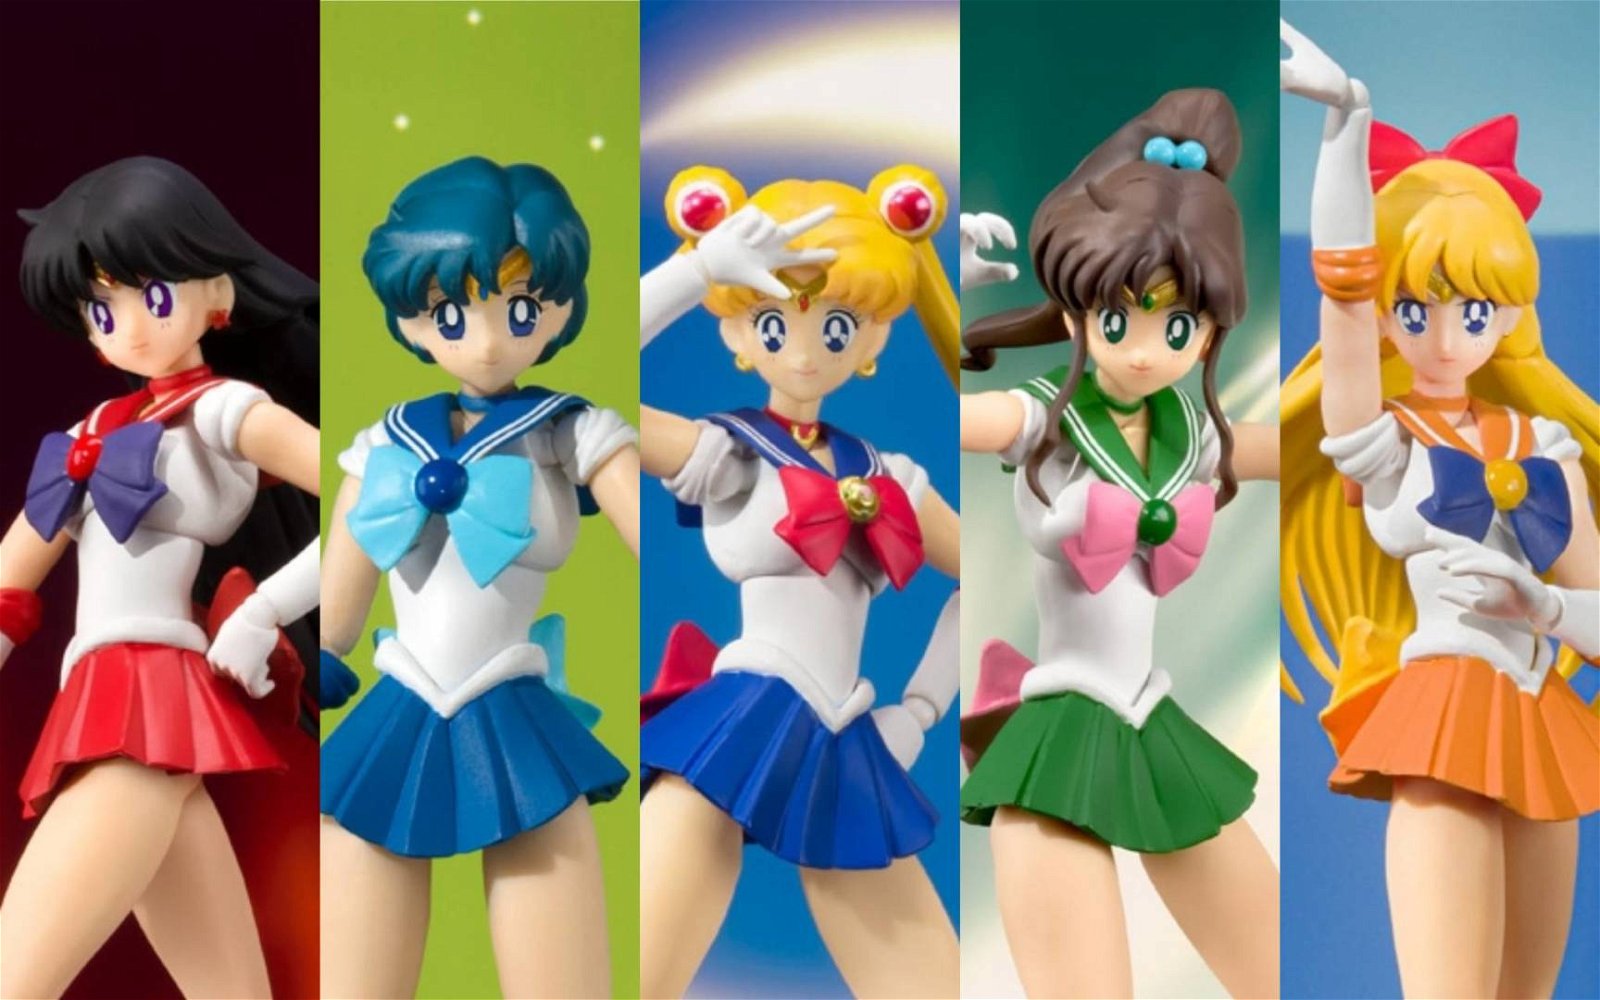 Immagine di Sailor Moon, da Tamashii Nations tornano le S.H. Figuarts con nuovi colori